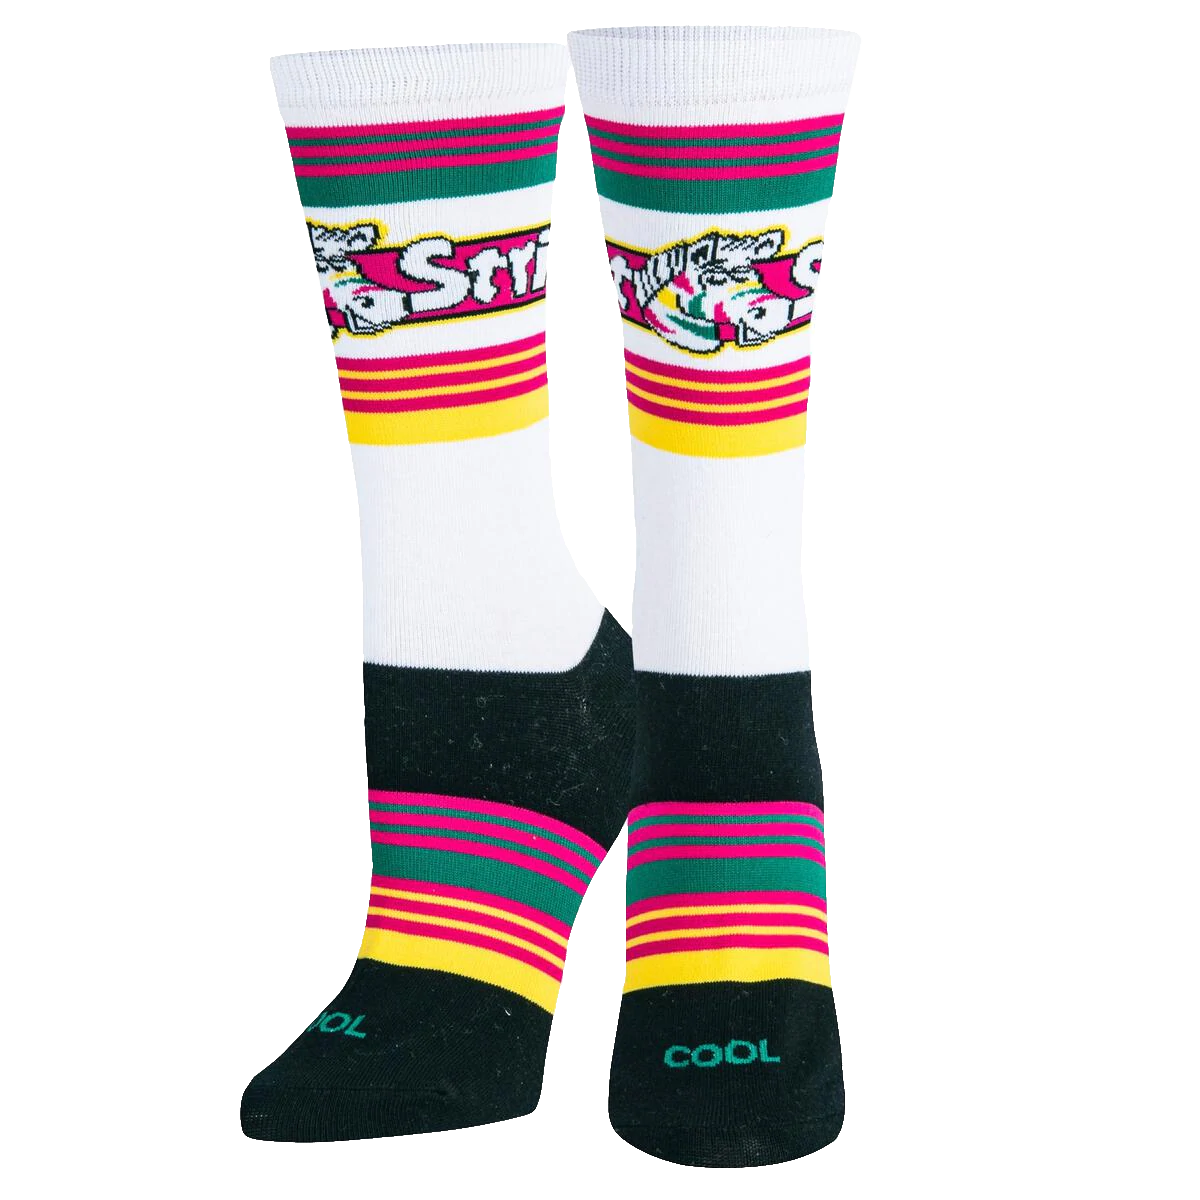 Fruit Stripes Socks - Womens